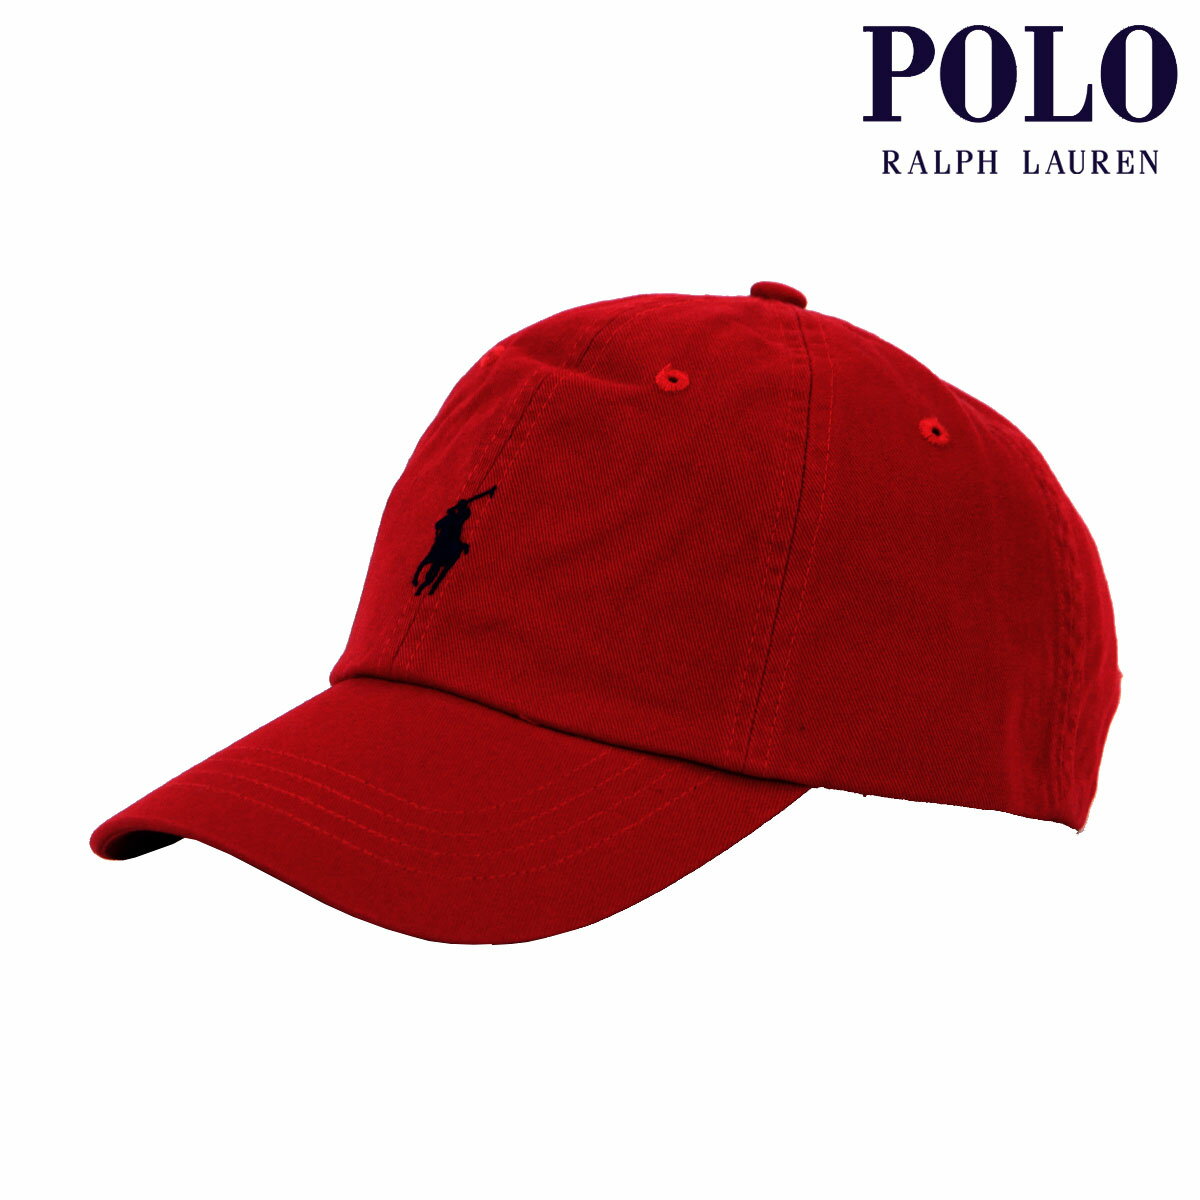 ポロ ラルフ ローレン ポロ ラルフローレン メンズ レディース キャップ 正規品 POLO RALPH LAUREN 帽子 ロゴ ポニー CLASSIC SPORTS CAP RED 710548524 父の日 プレゼント ラッピング